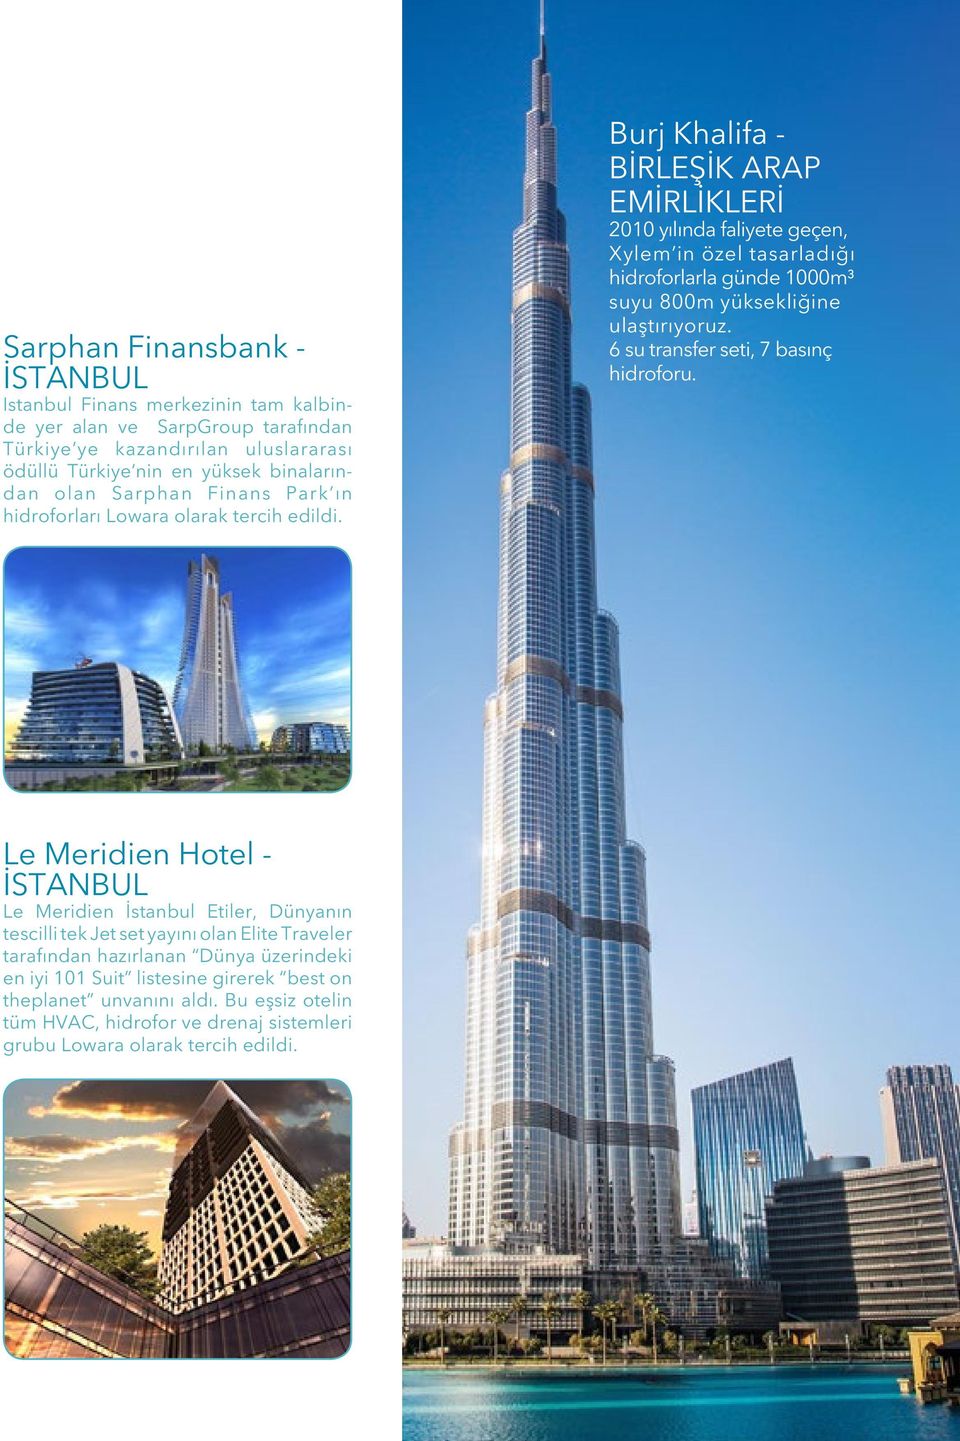 Burj Khalifa - BİRLEŞİK ARAP EMİRLİKLERİ 2010 yılında faliyete geçen, Xylem in özel tasarladığı hidroforlarla günde 1000m³ suyu 800m yüksekliğine ulaştırıyoruz.